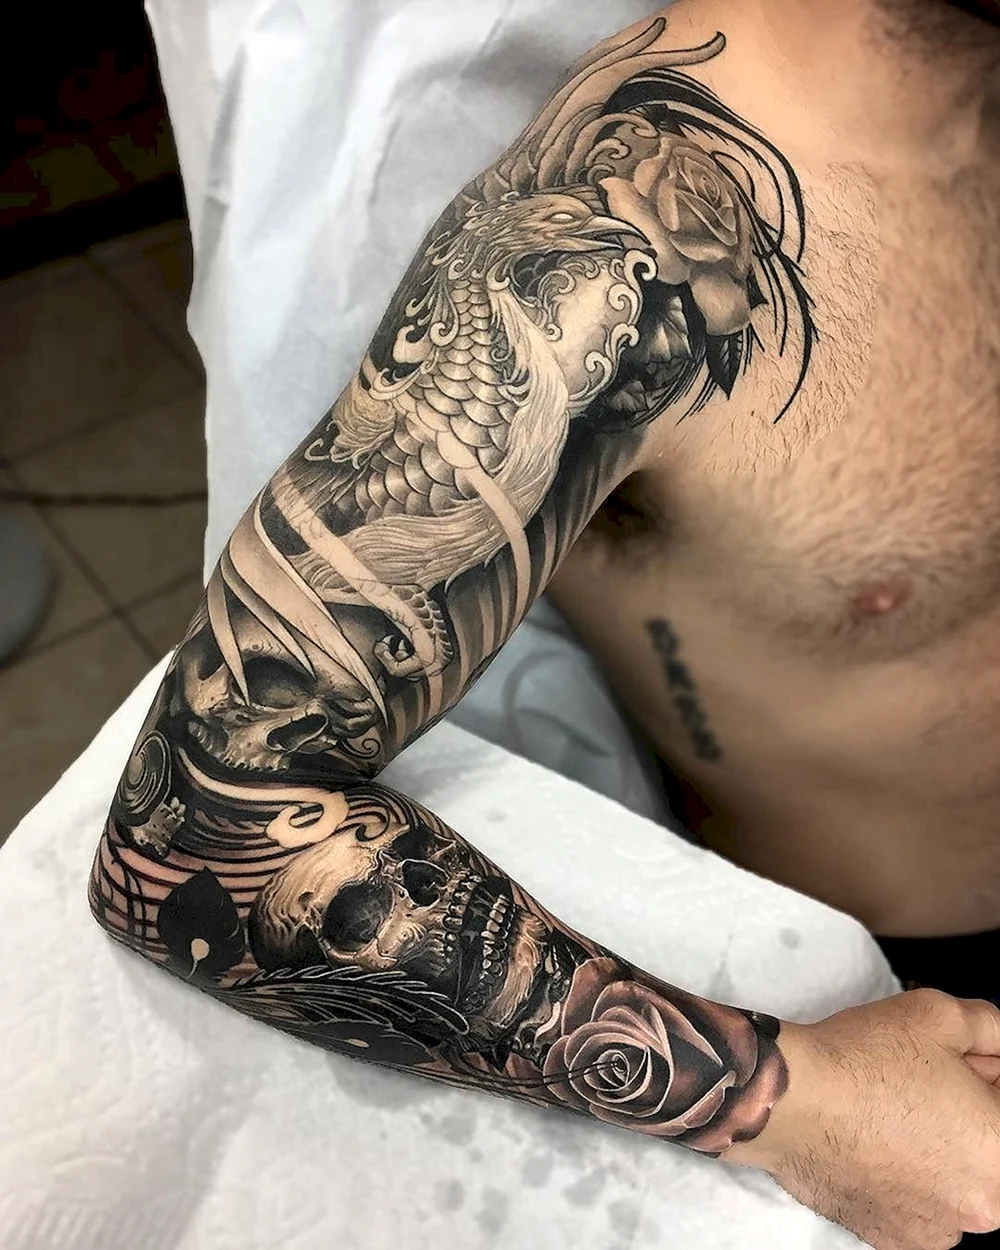 Artistic Tattoo Sleeve